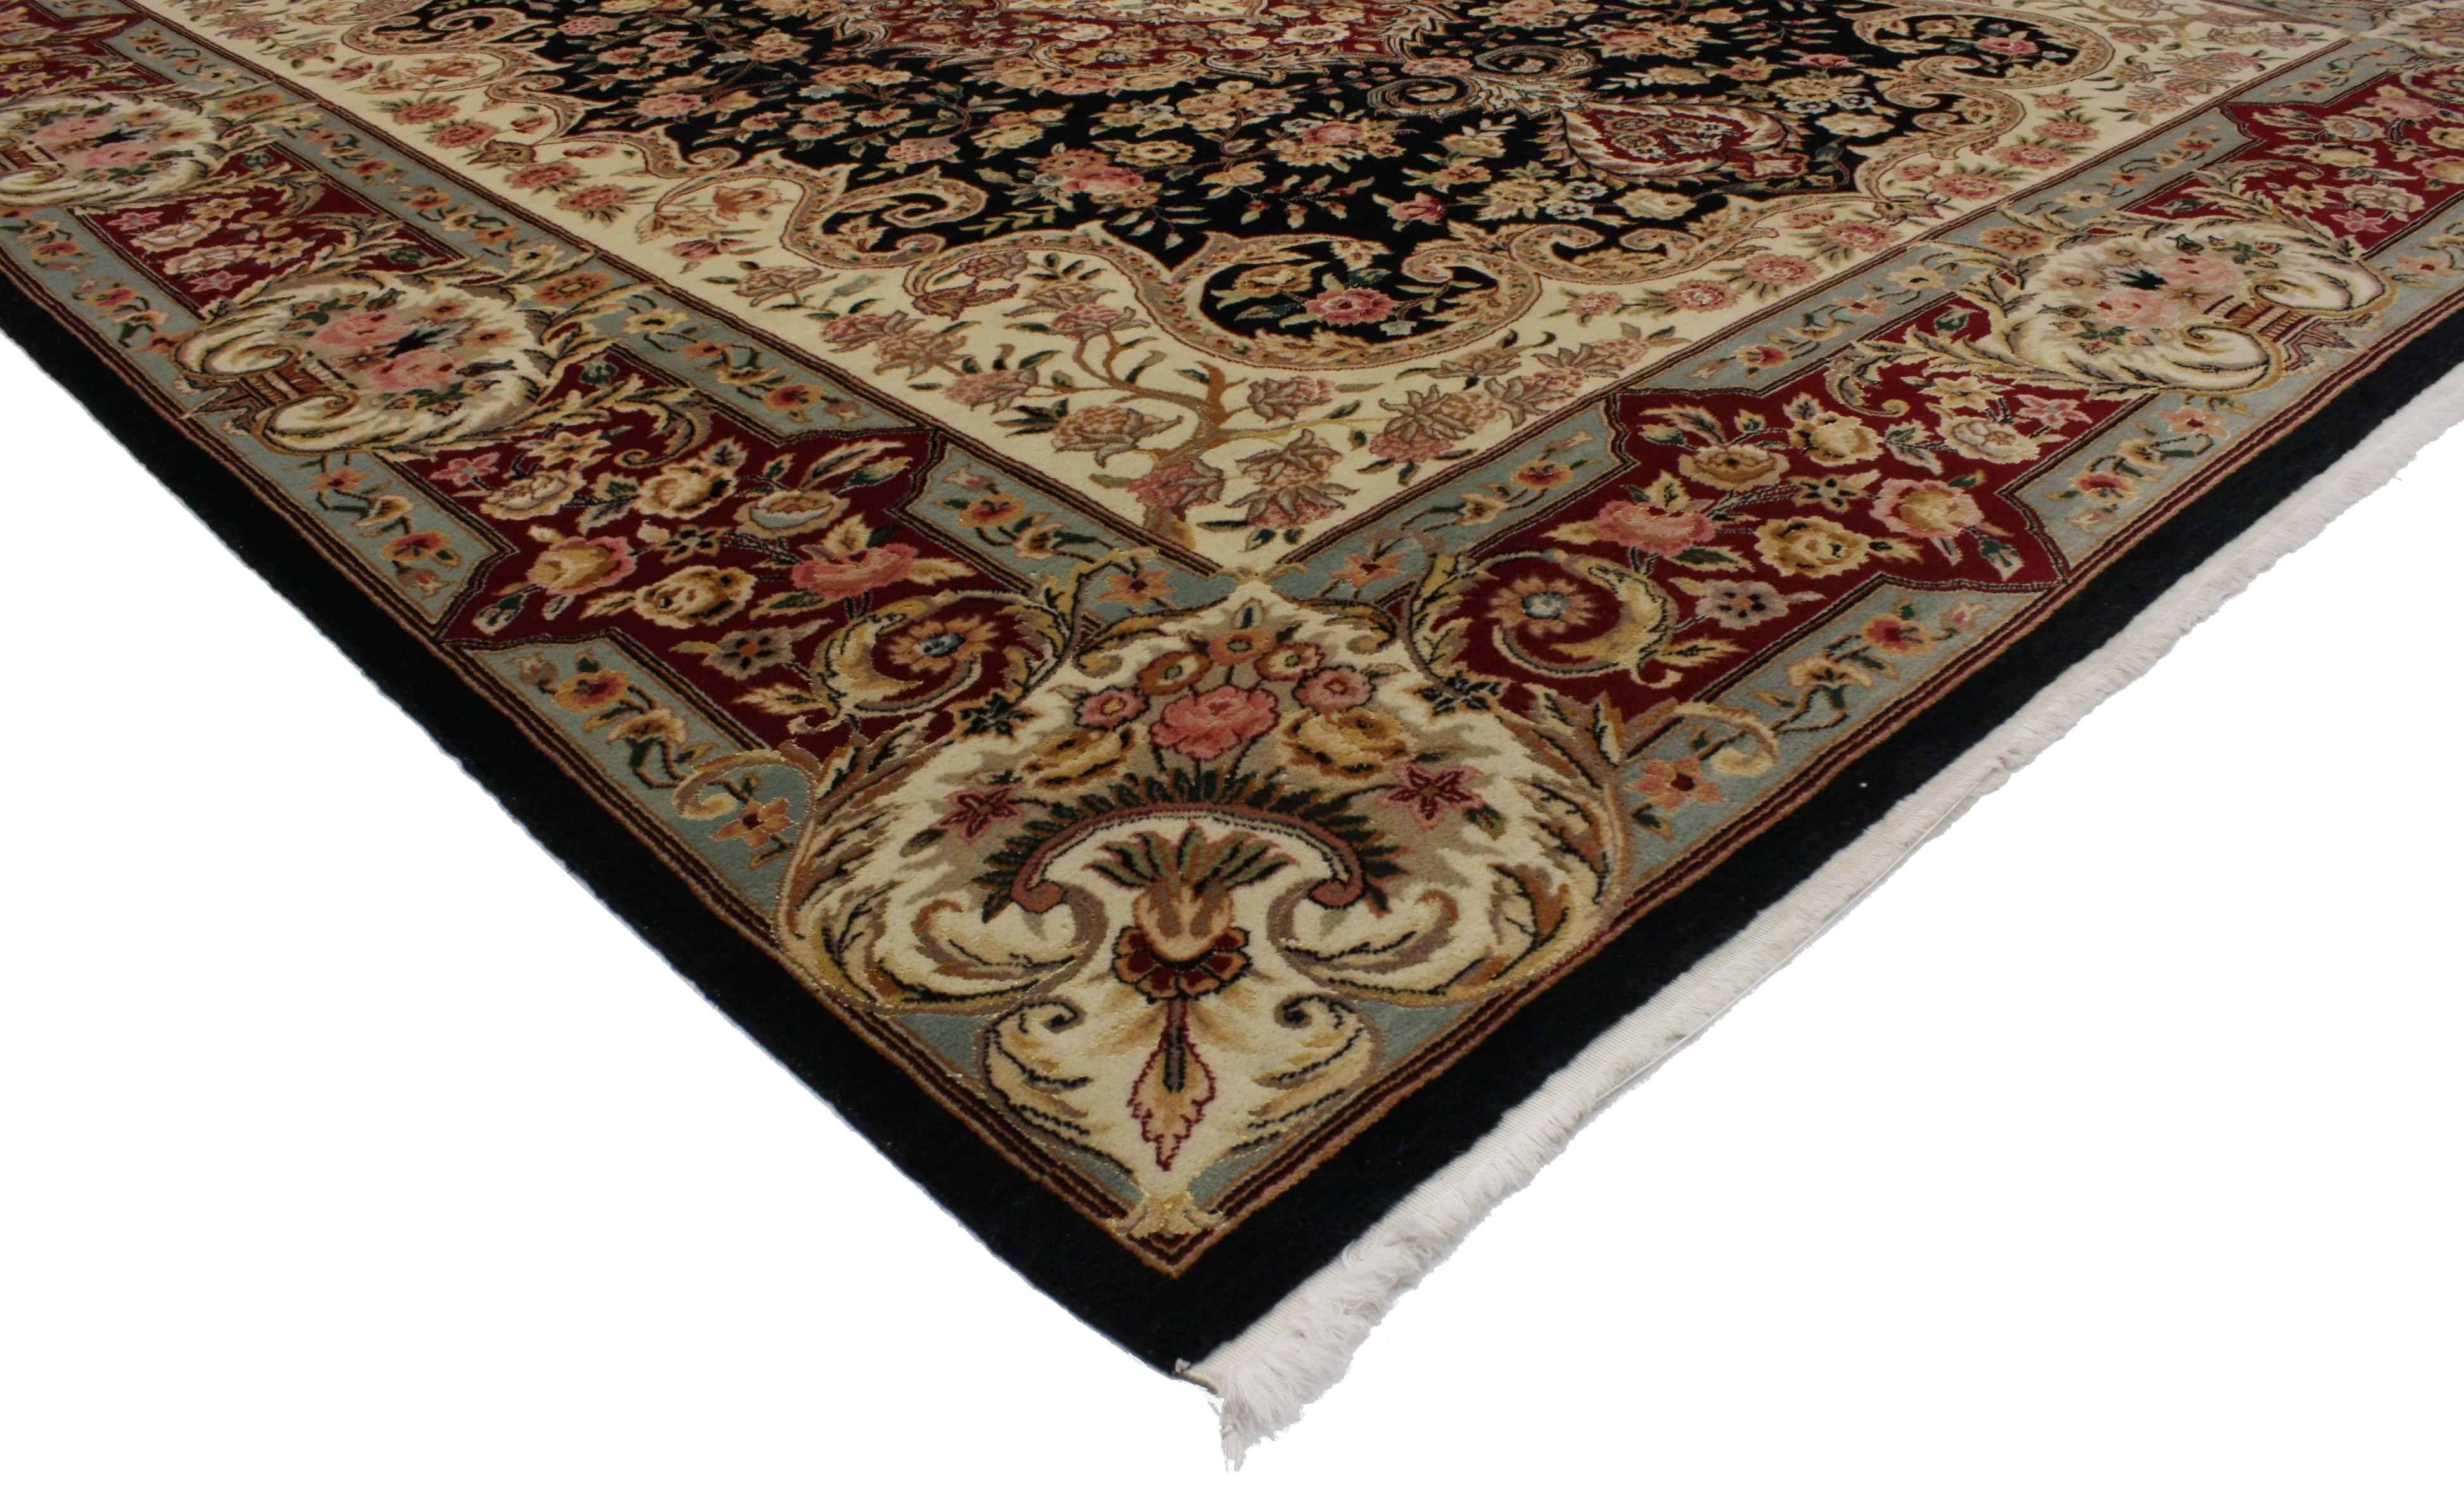 76698, Neuer Teppich im persischen Stil mit traditionellem Kirman-Muster. Dieser opulente, handgeknüpfte Teppich aus persischer Wolle im Kirman-Stil zeichnet sich durch ein kompliziertes Medaillon in der Mitte aus, das ein stilisiertes Blumenmotiv